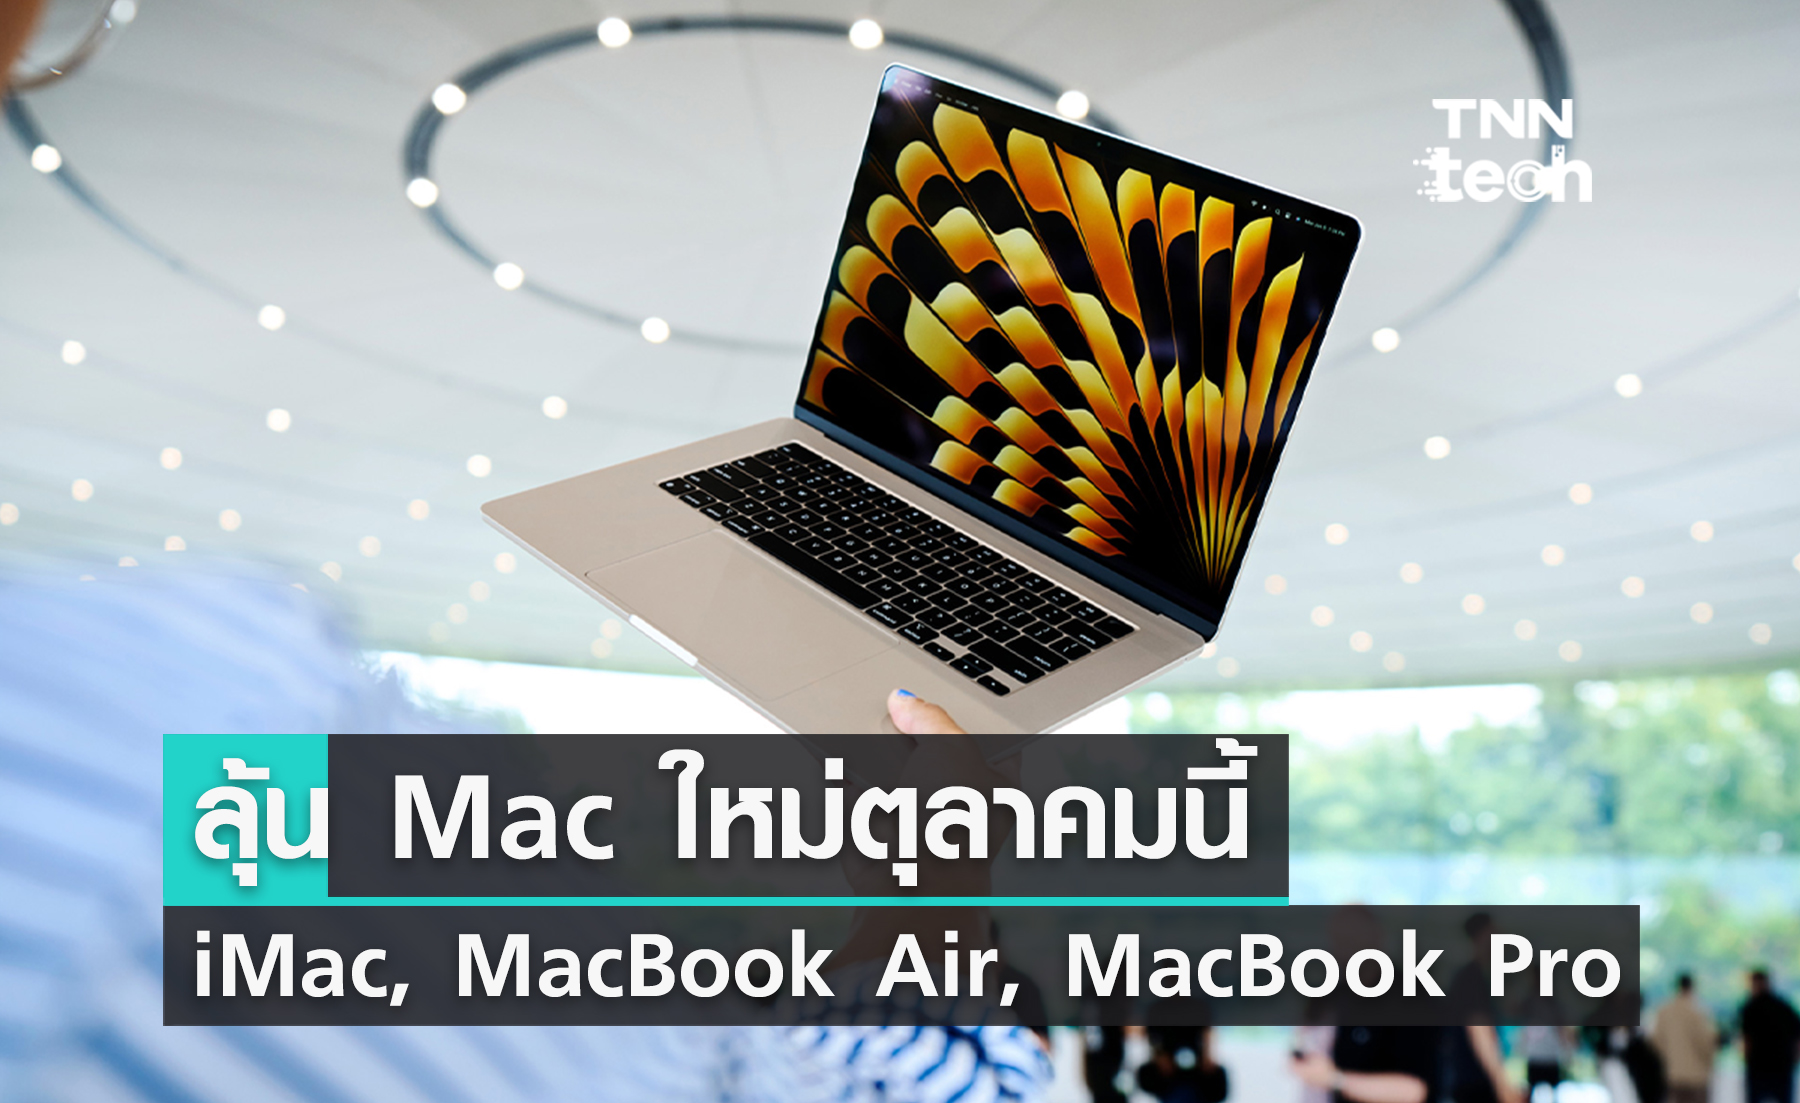 สรุปข่าวลือคอมพิวเตอร์ตระกูล Mac ใหม่ที่ Apple อาจเปิดตัวเร็ว ๆ นี้ ทั้ง iMac, MacBook Air และ MacBook Pro